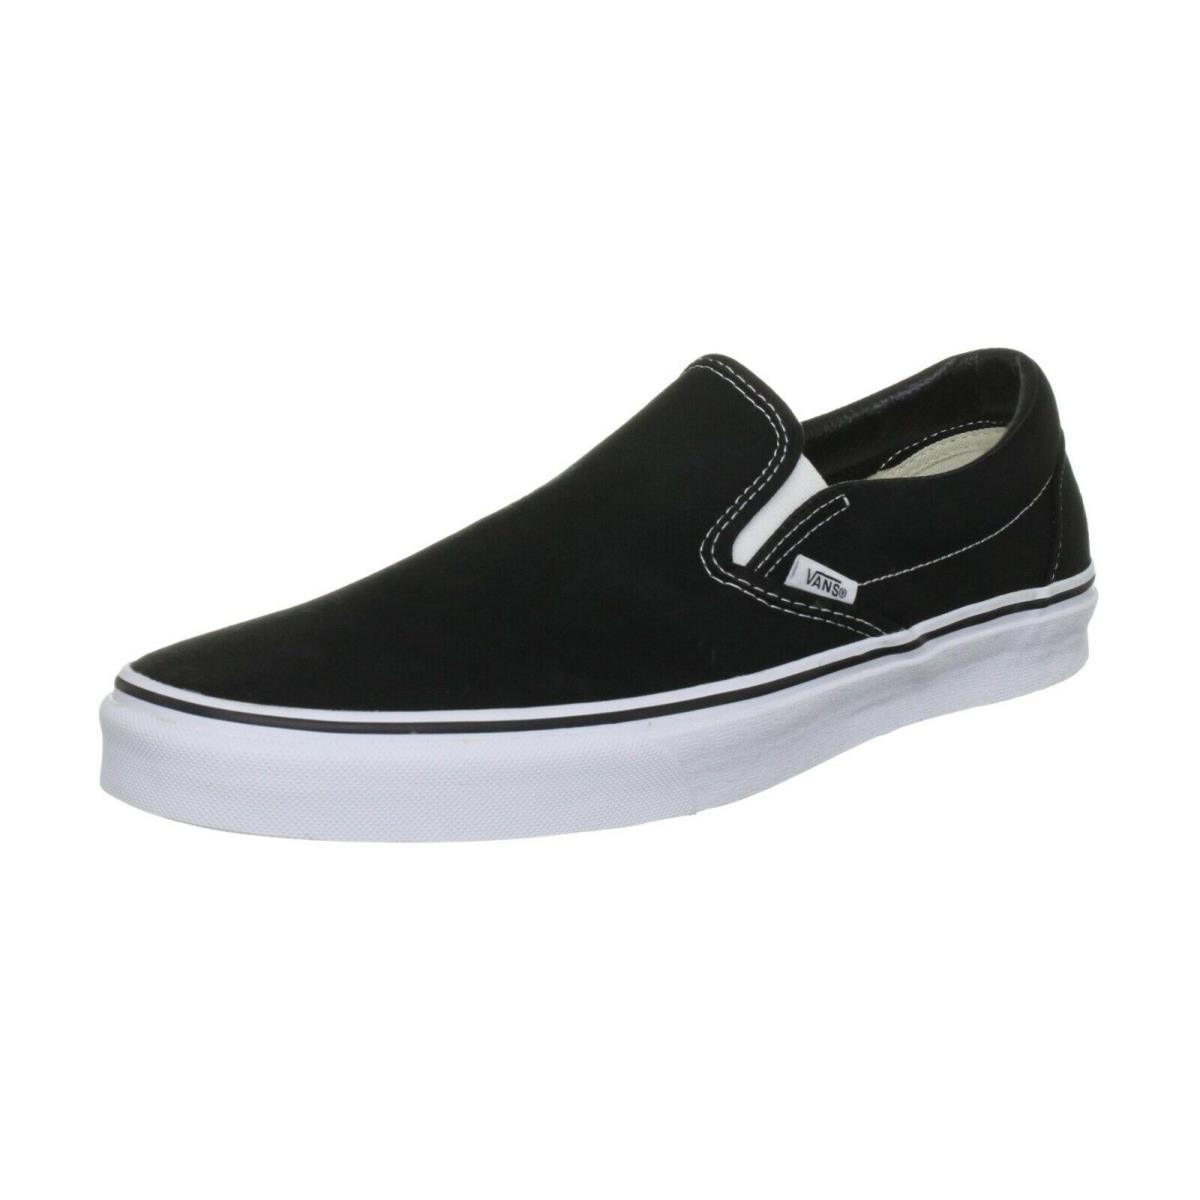 Vans Classic Slip On Men Women Shoes - Black White Canvas